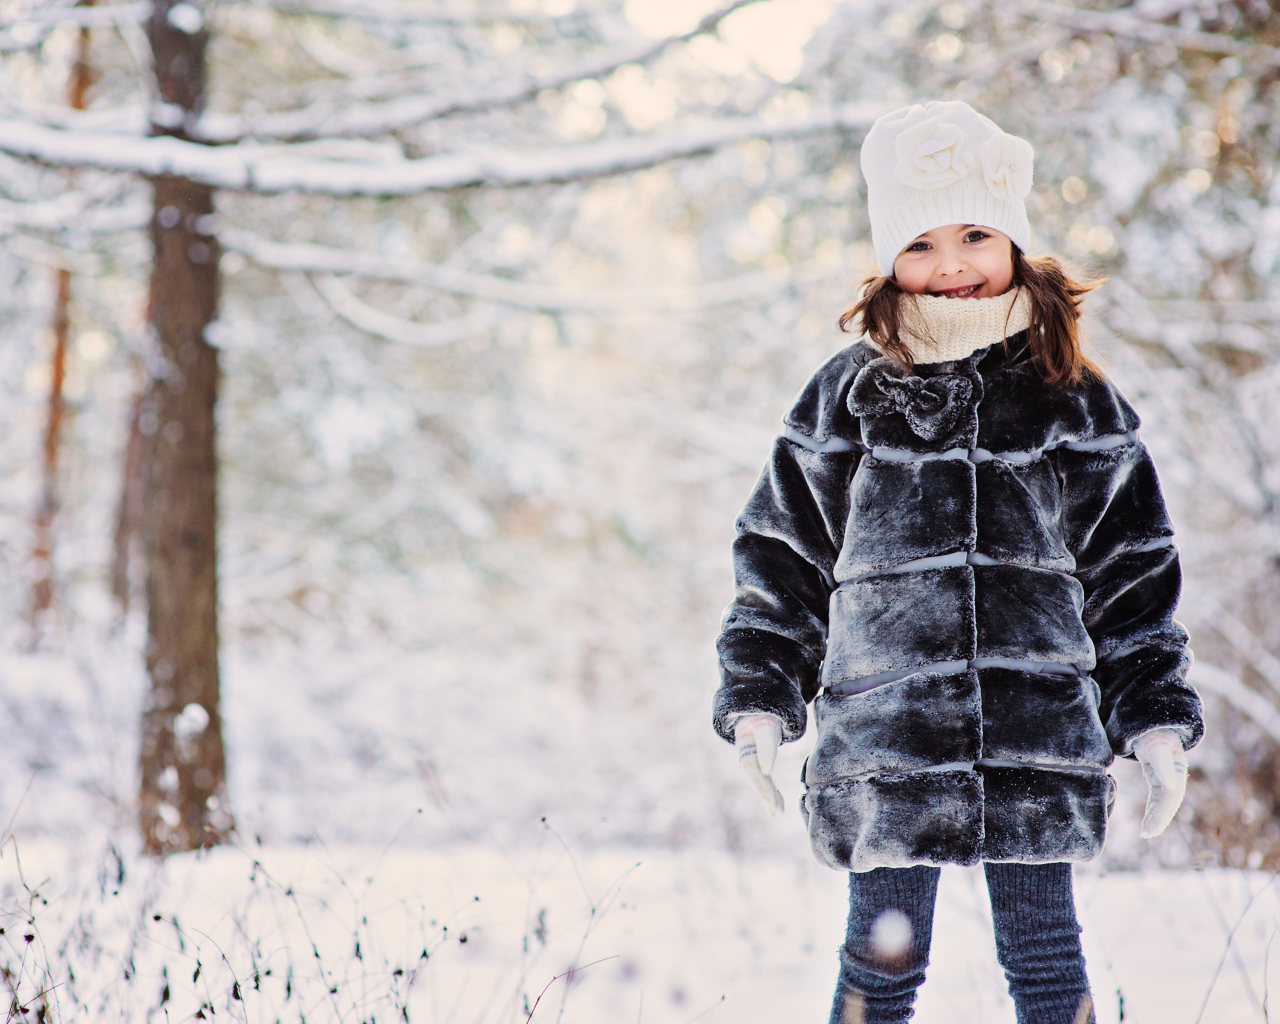 Cute little girl in winter fur coat